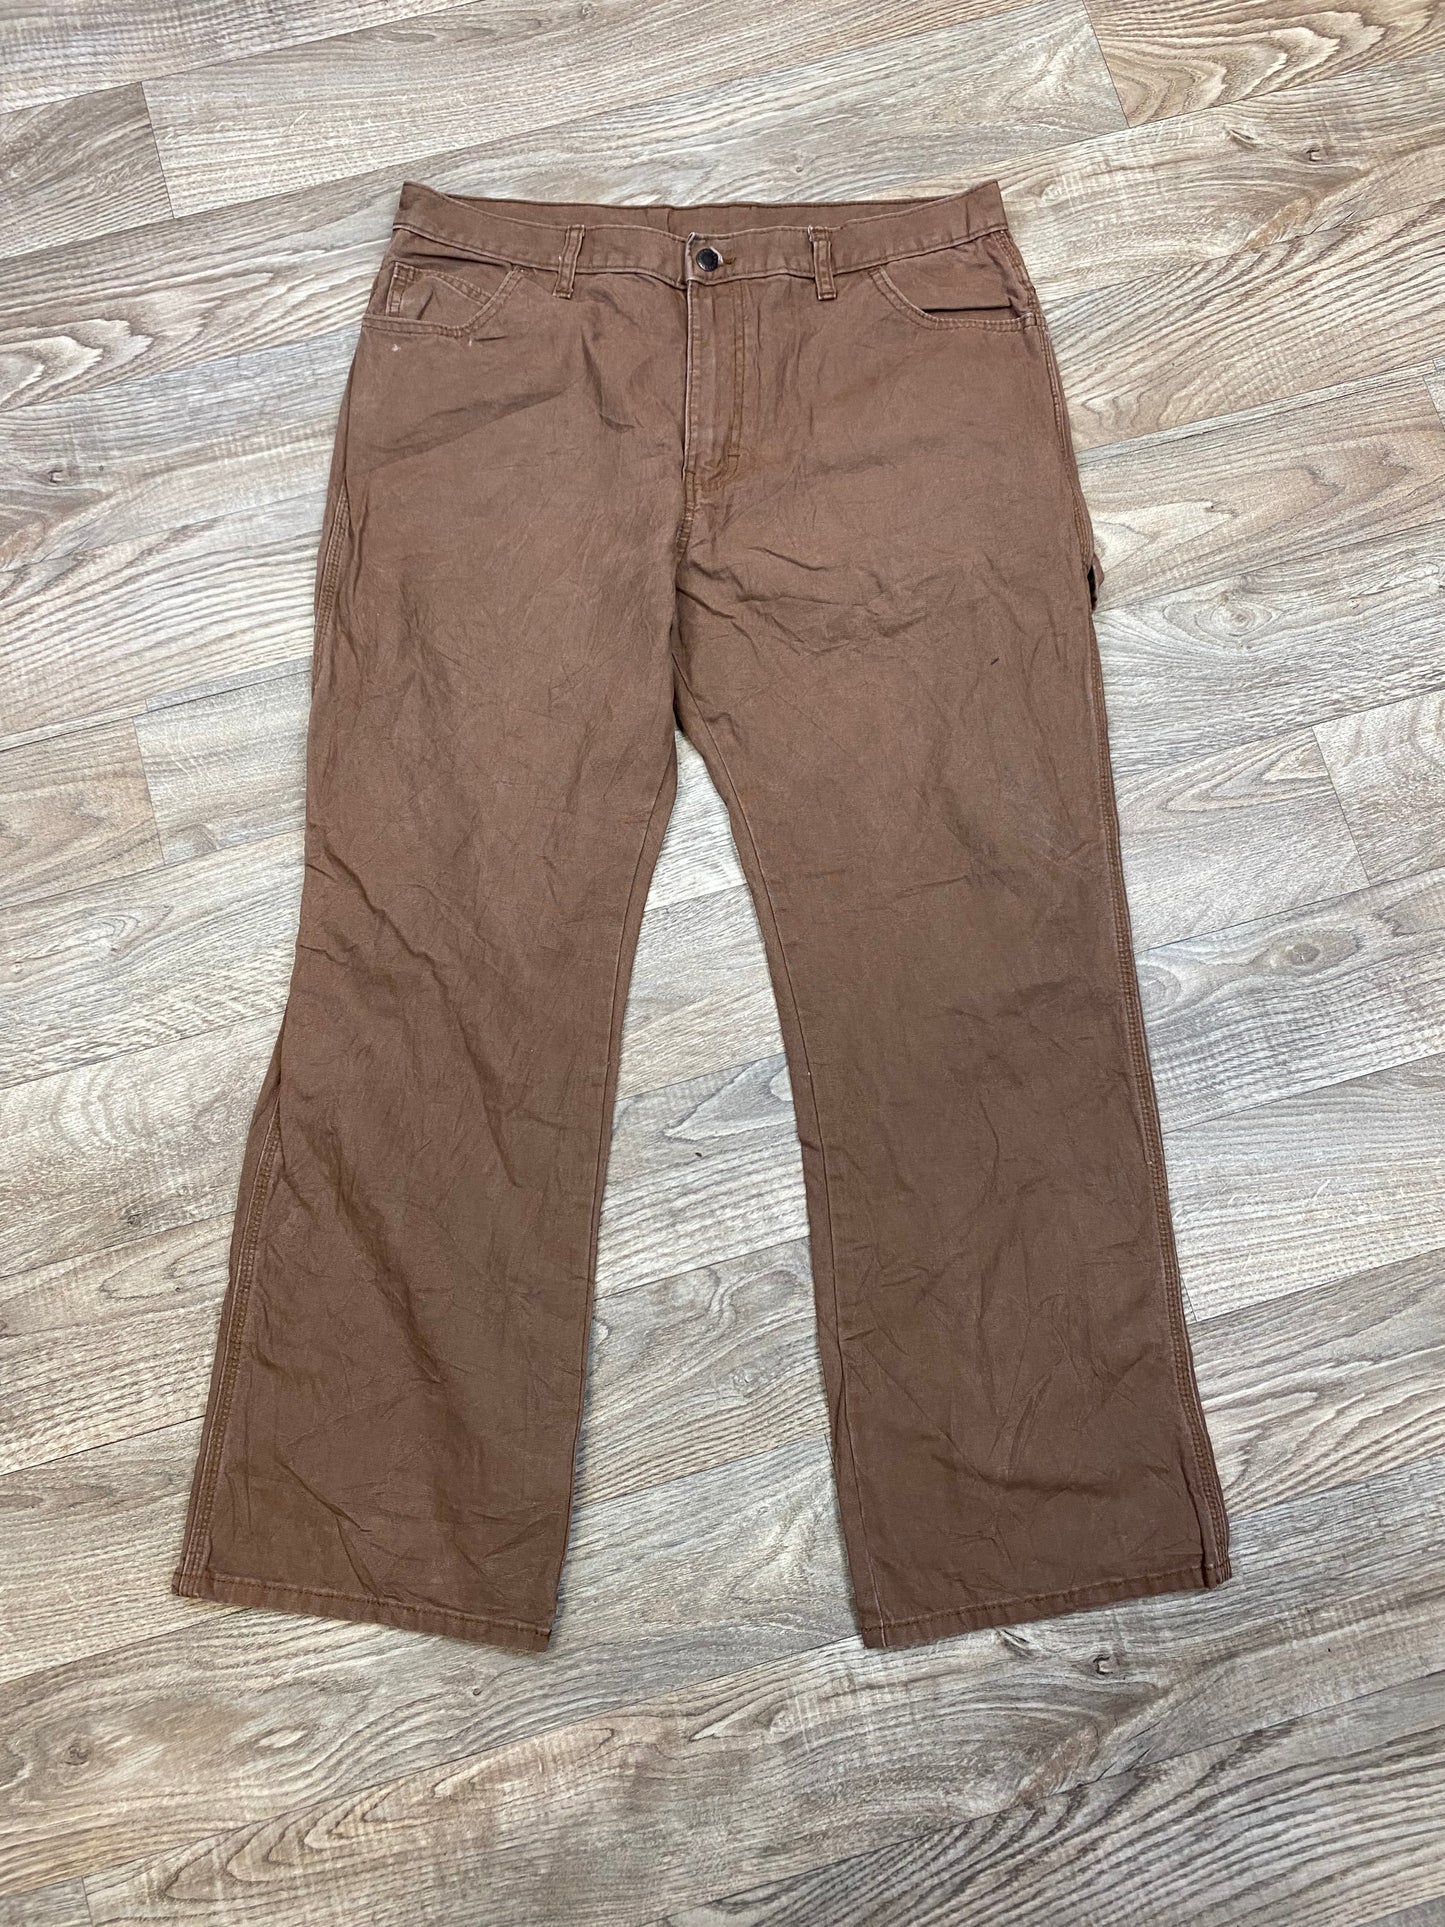 Vintage Dickies 36x30 Carpenter Pants